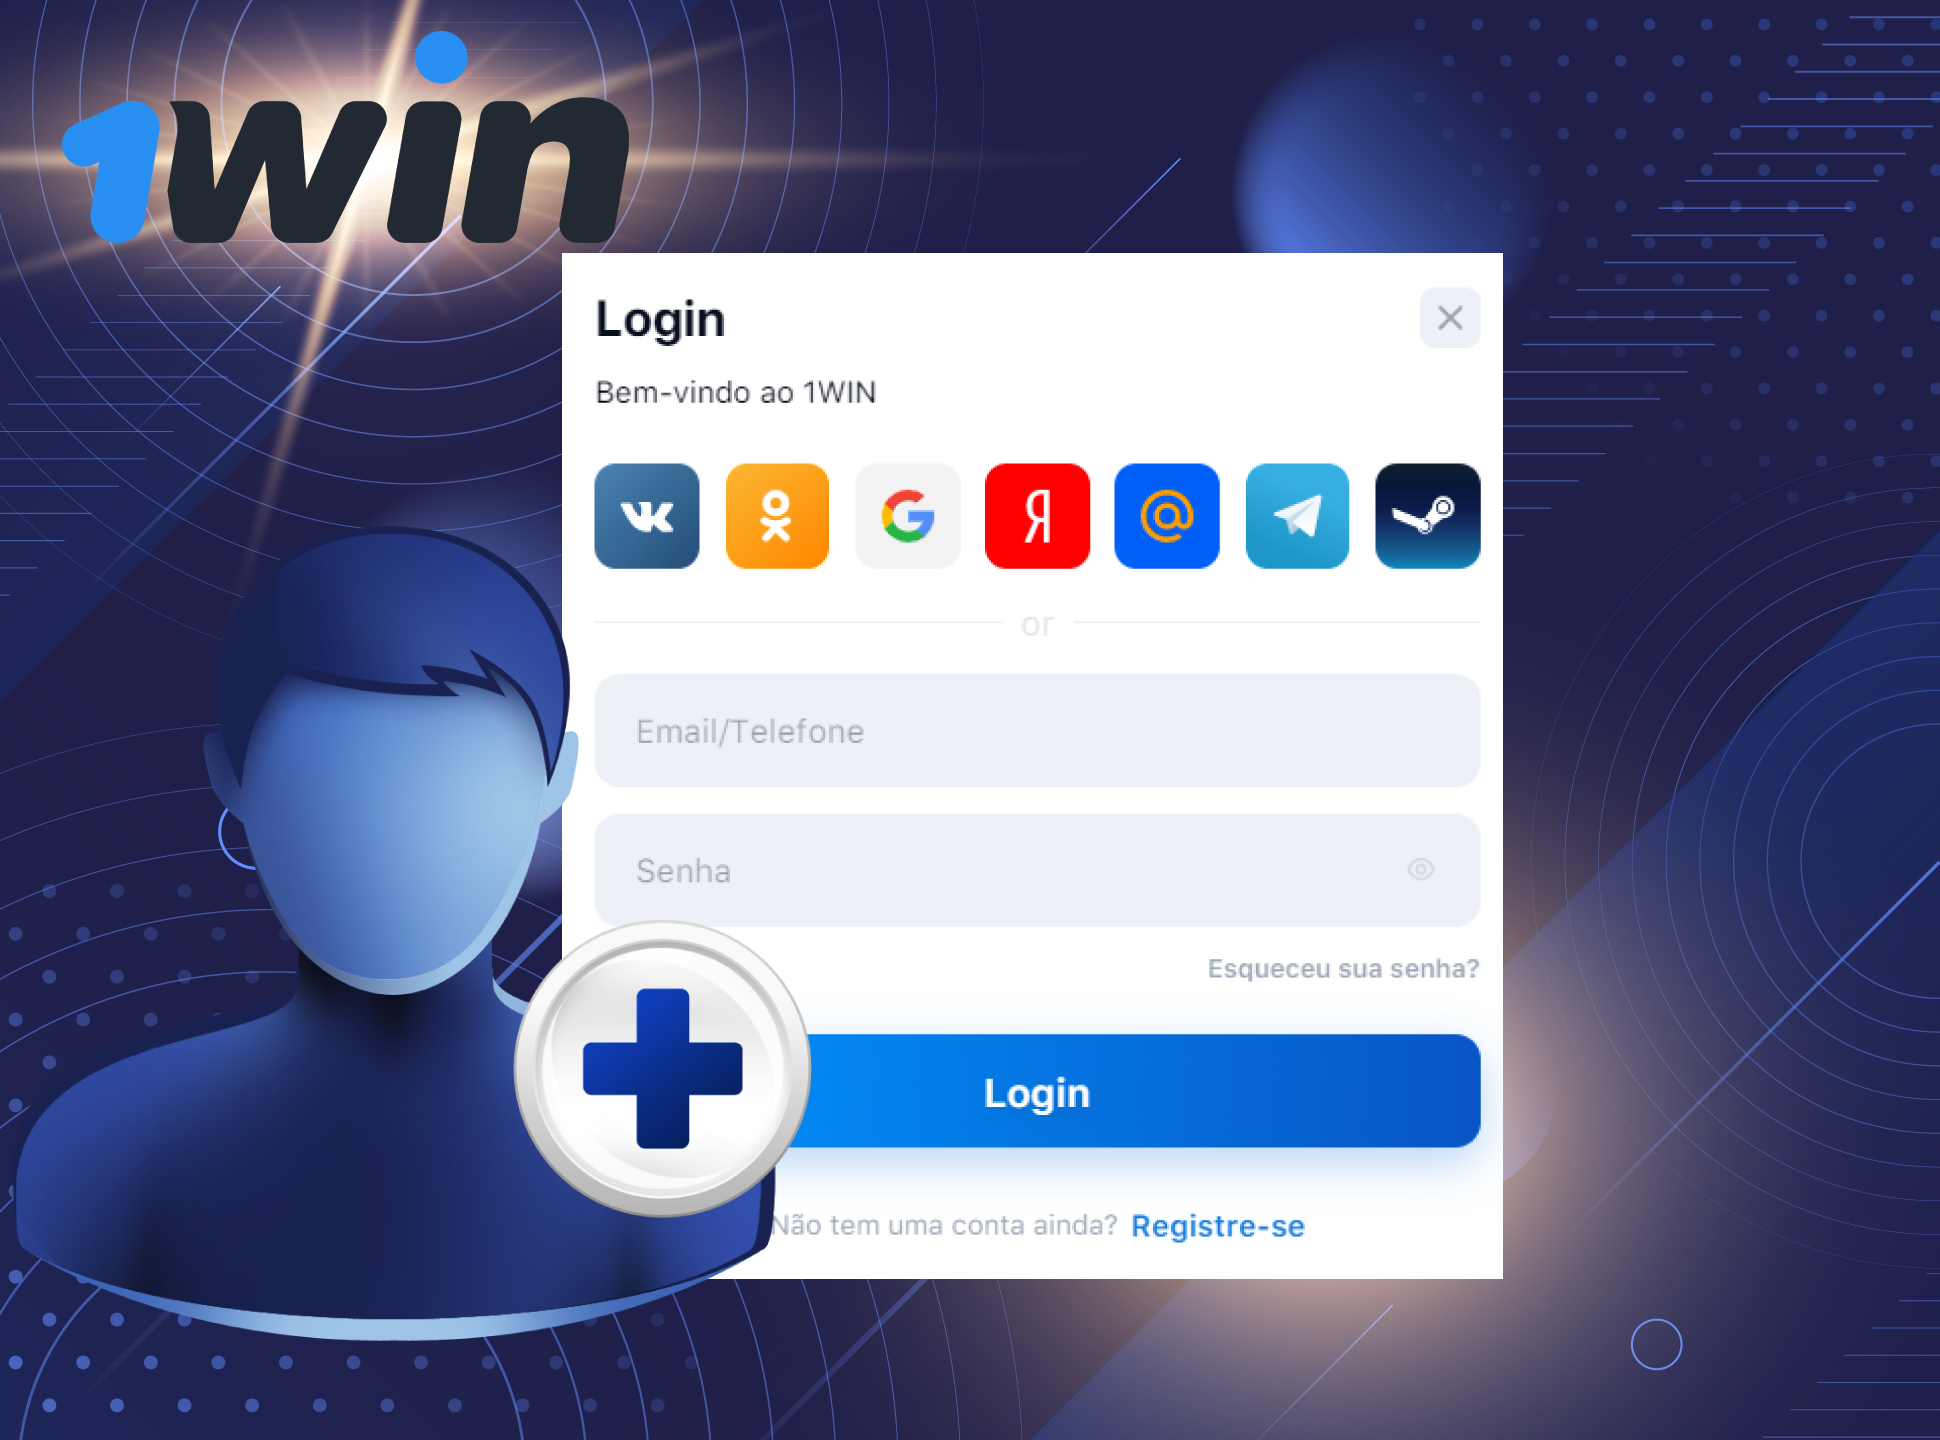 Use seu nome de usuário e senha para fazer o login em sua conta 1win.